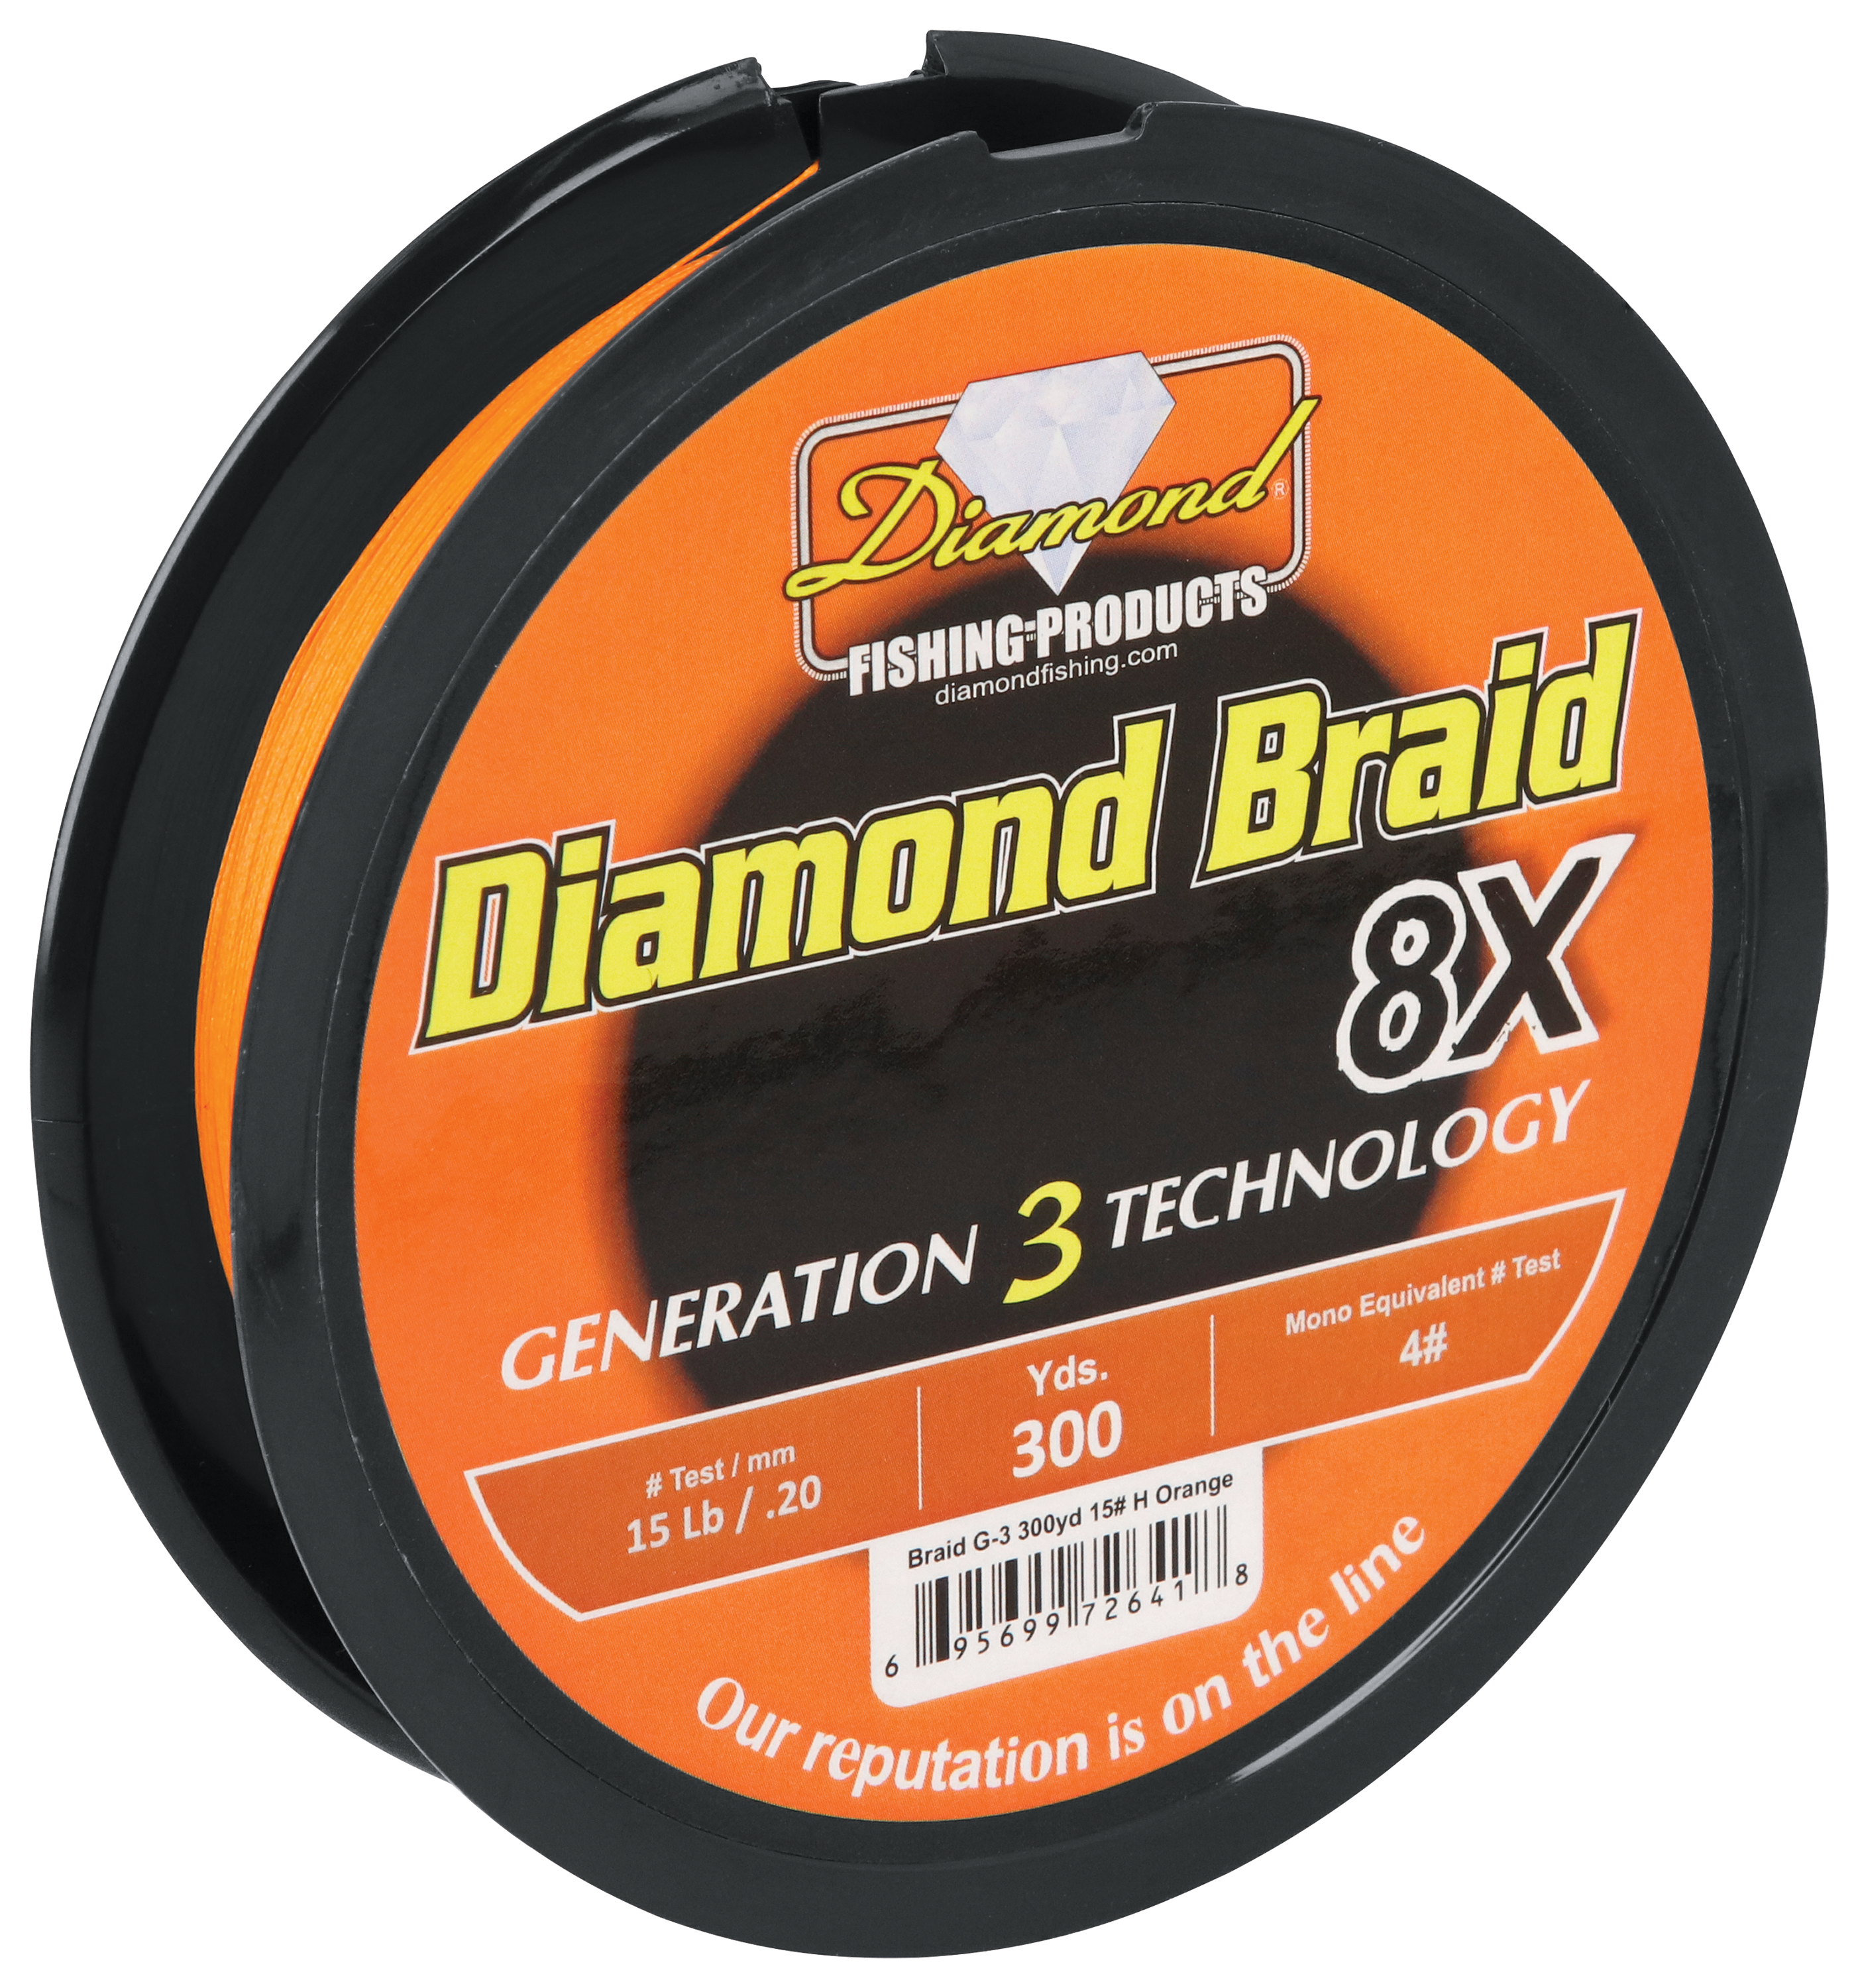 Diamond Braid Generation III 8x Braided Line - Blue - 30lb - 300yd